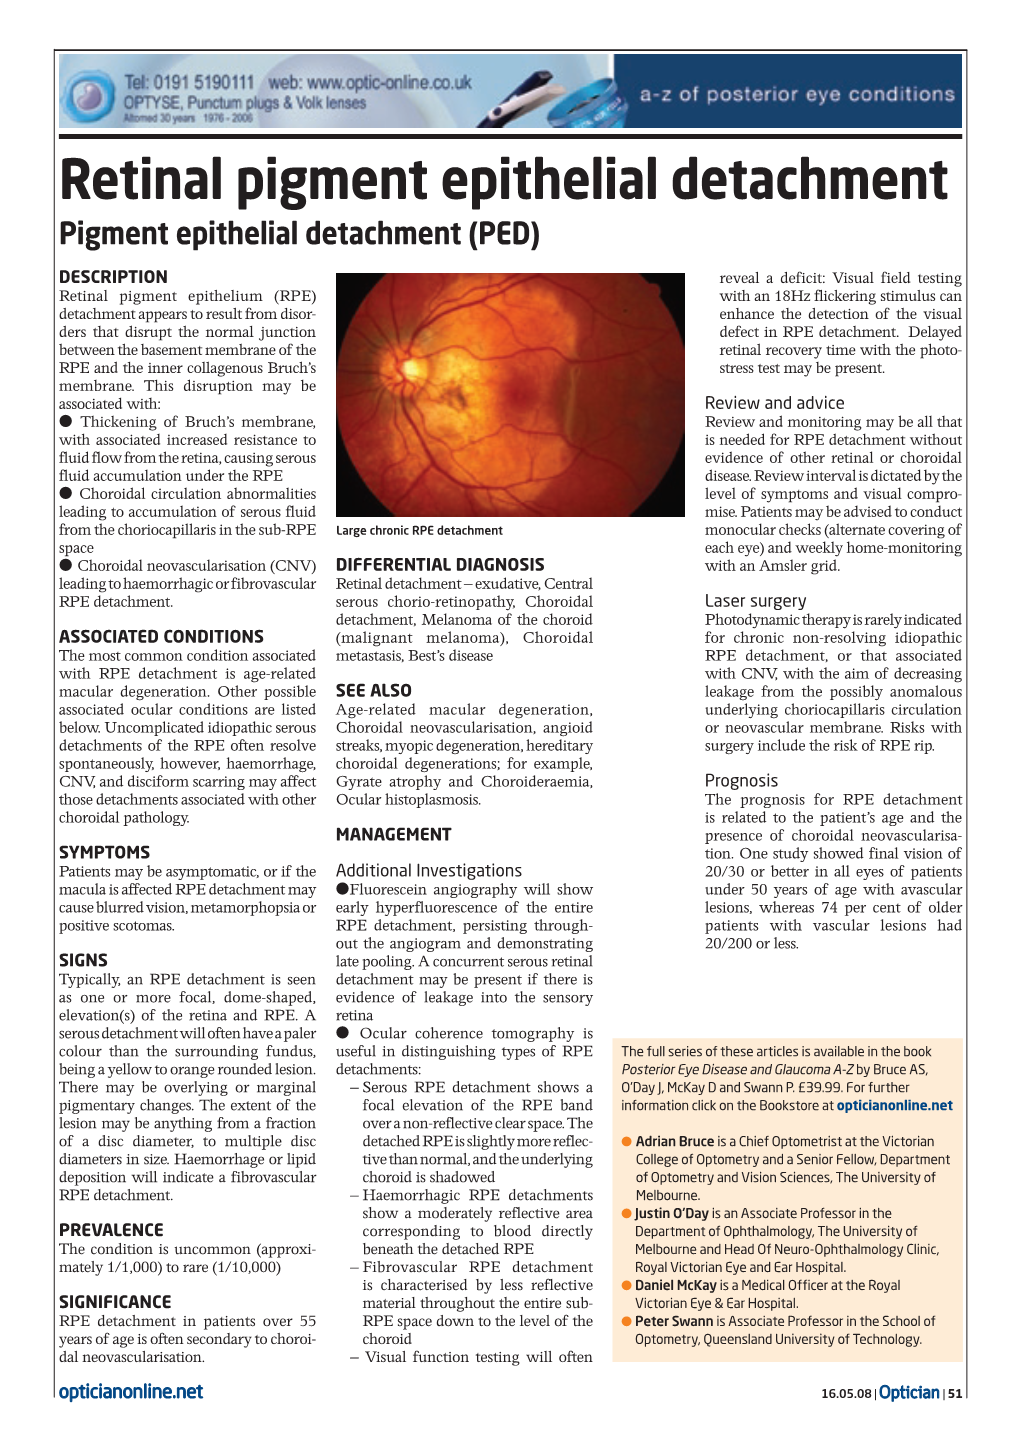 Retinal Pigment Epithelial Detachment Pigment Epithelial Detachment (PED)